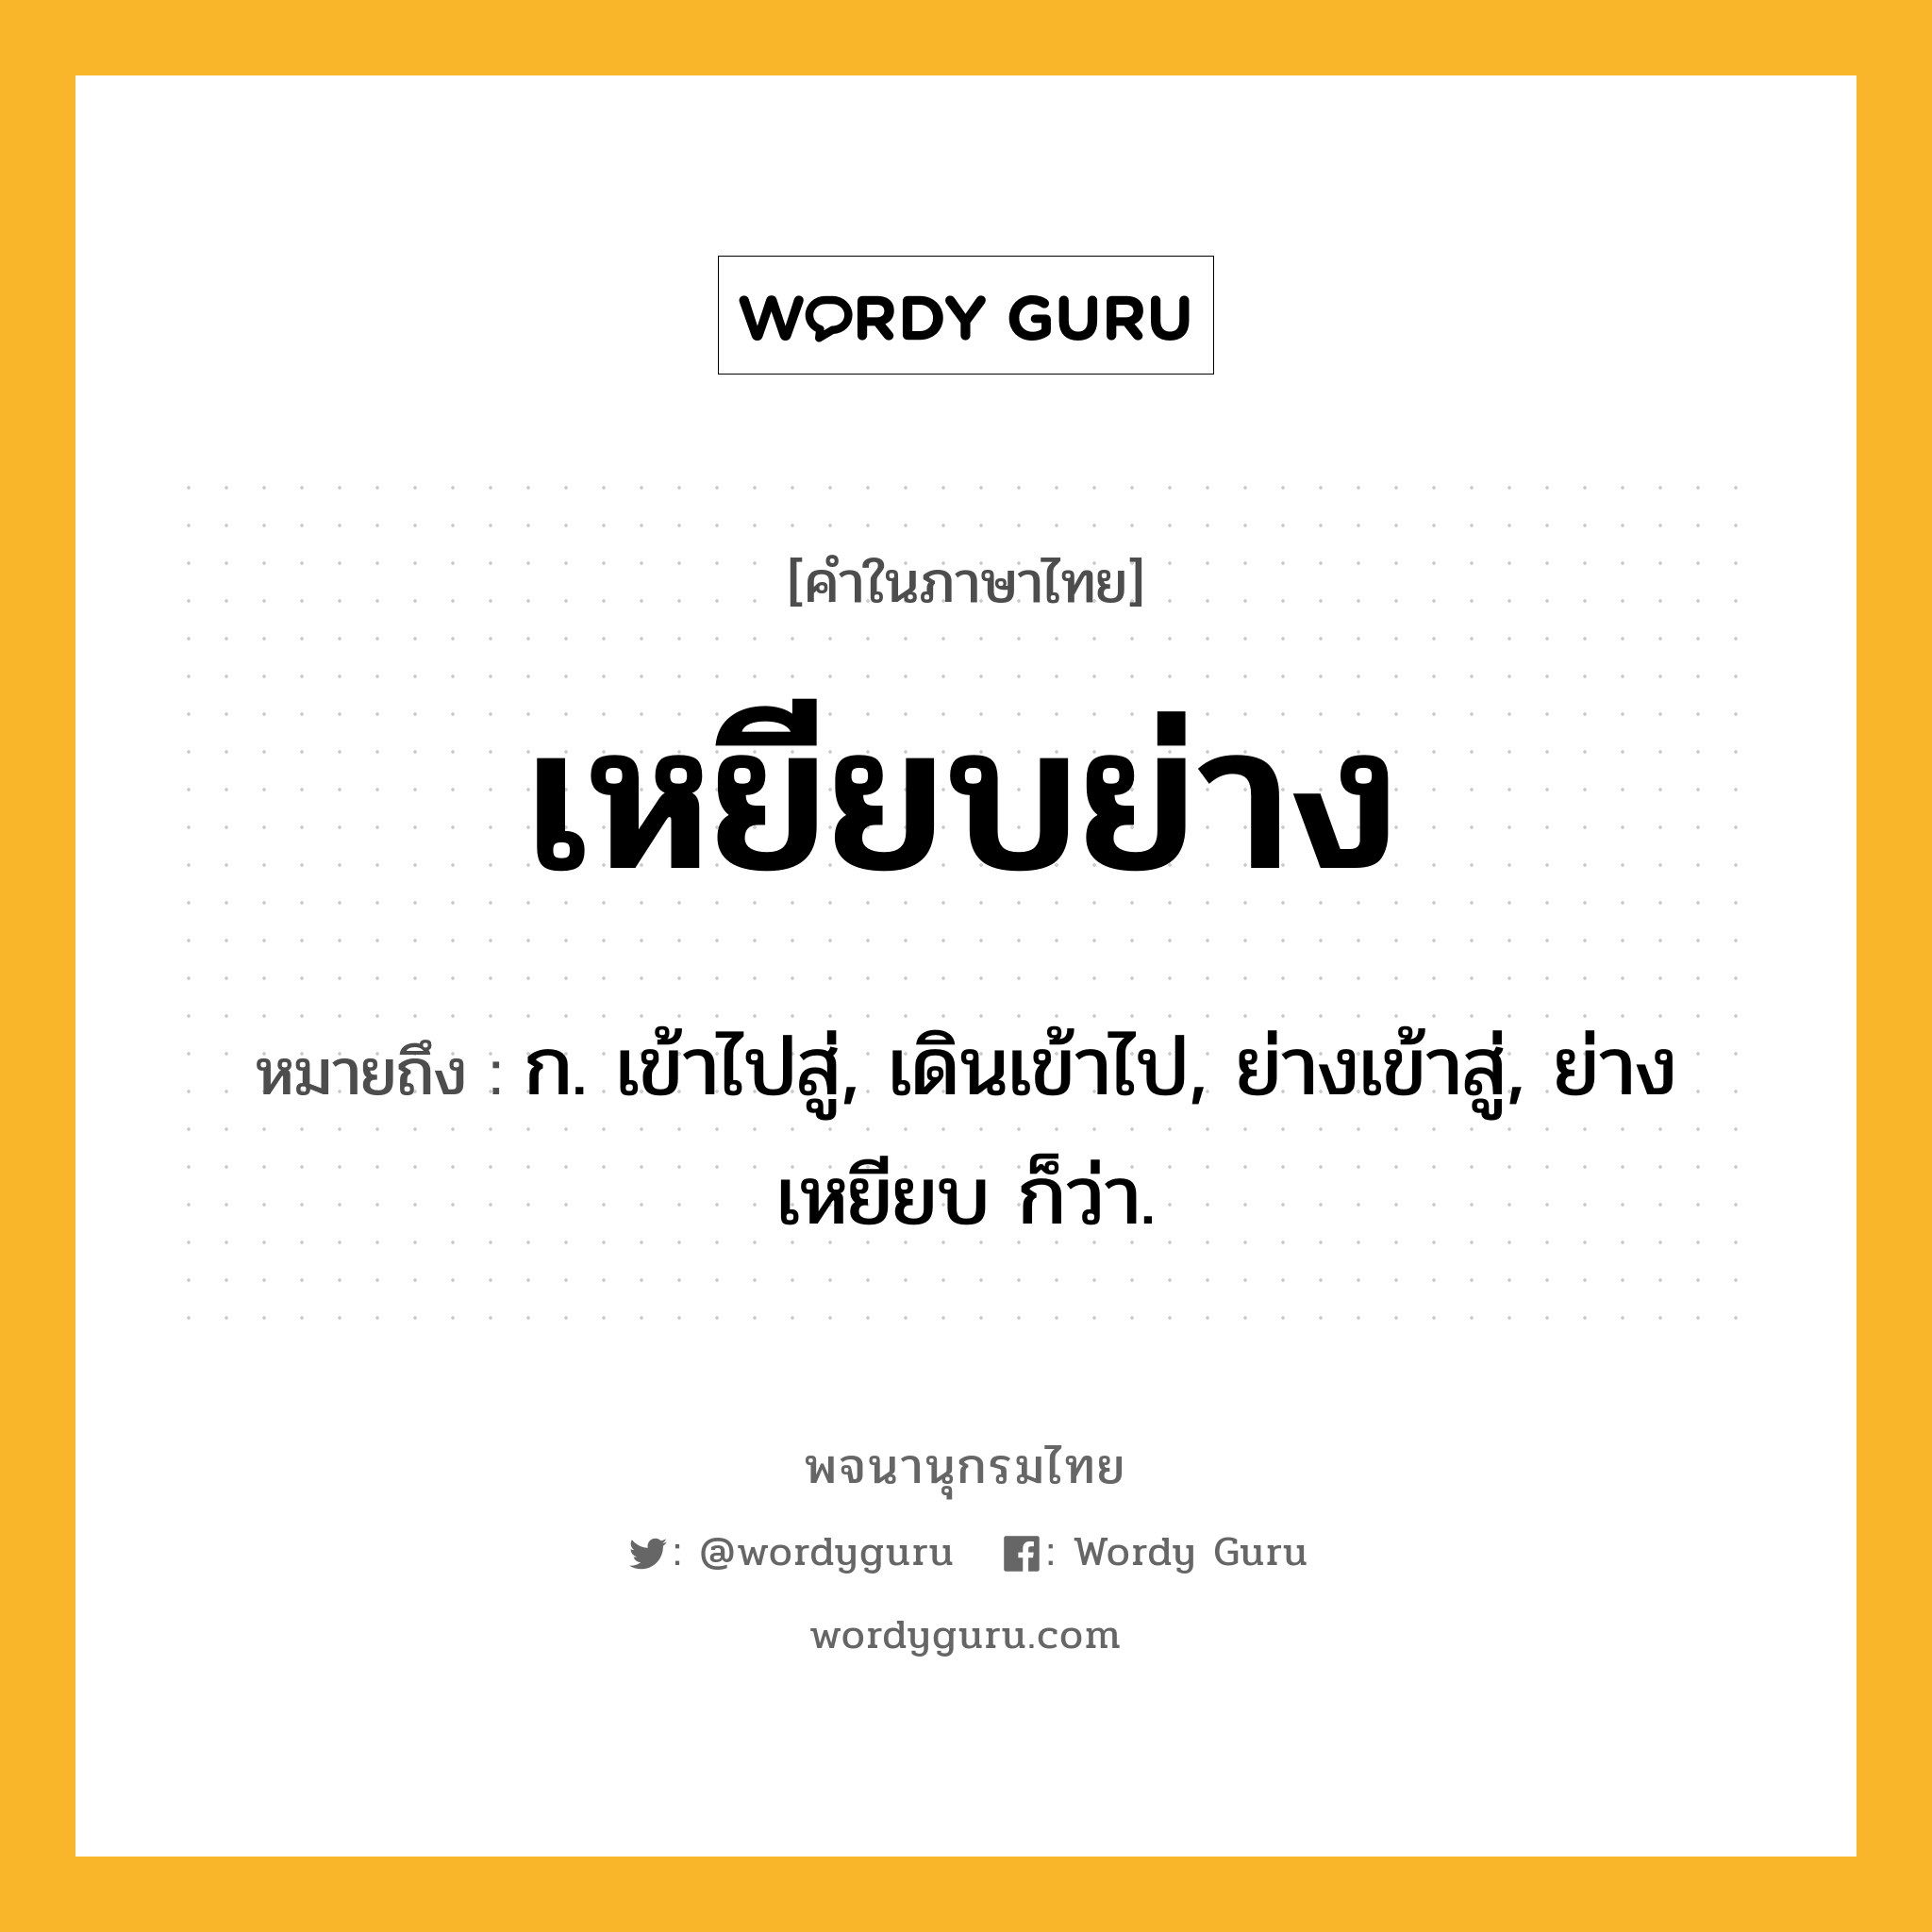 เหยียบย่าง ความหมาย หมายถึงอะไร?, คำในภาษาไทย เหยียบย่าง หมายถึง ก. เข้าไปสู่, เดินเข้าไป, ย่างเข้าสู่, ย่างเหยียบ ก็ว่า.